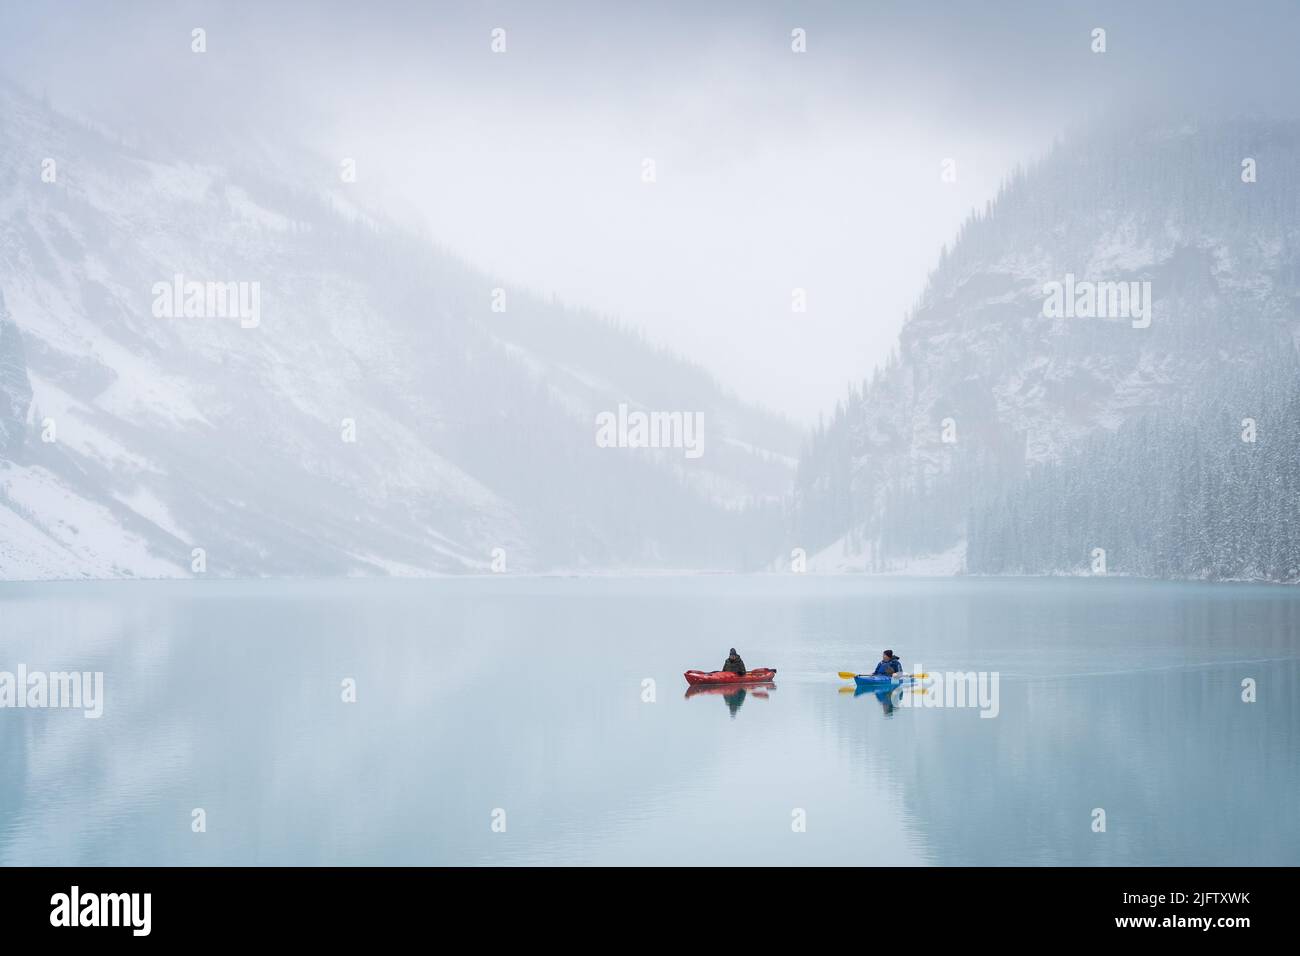 Deux kayakistes sur un lac alpin azur entouré de brume au début de l'hiver, parc Banff N., Canada Banque D'Images